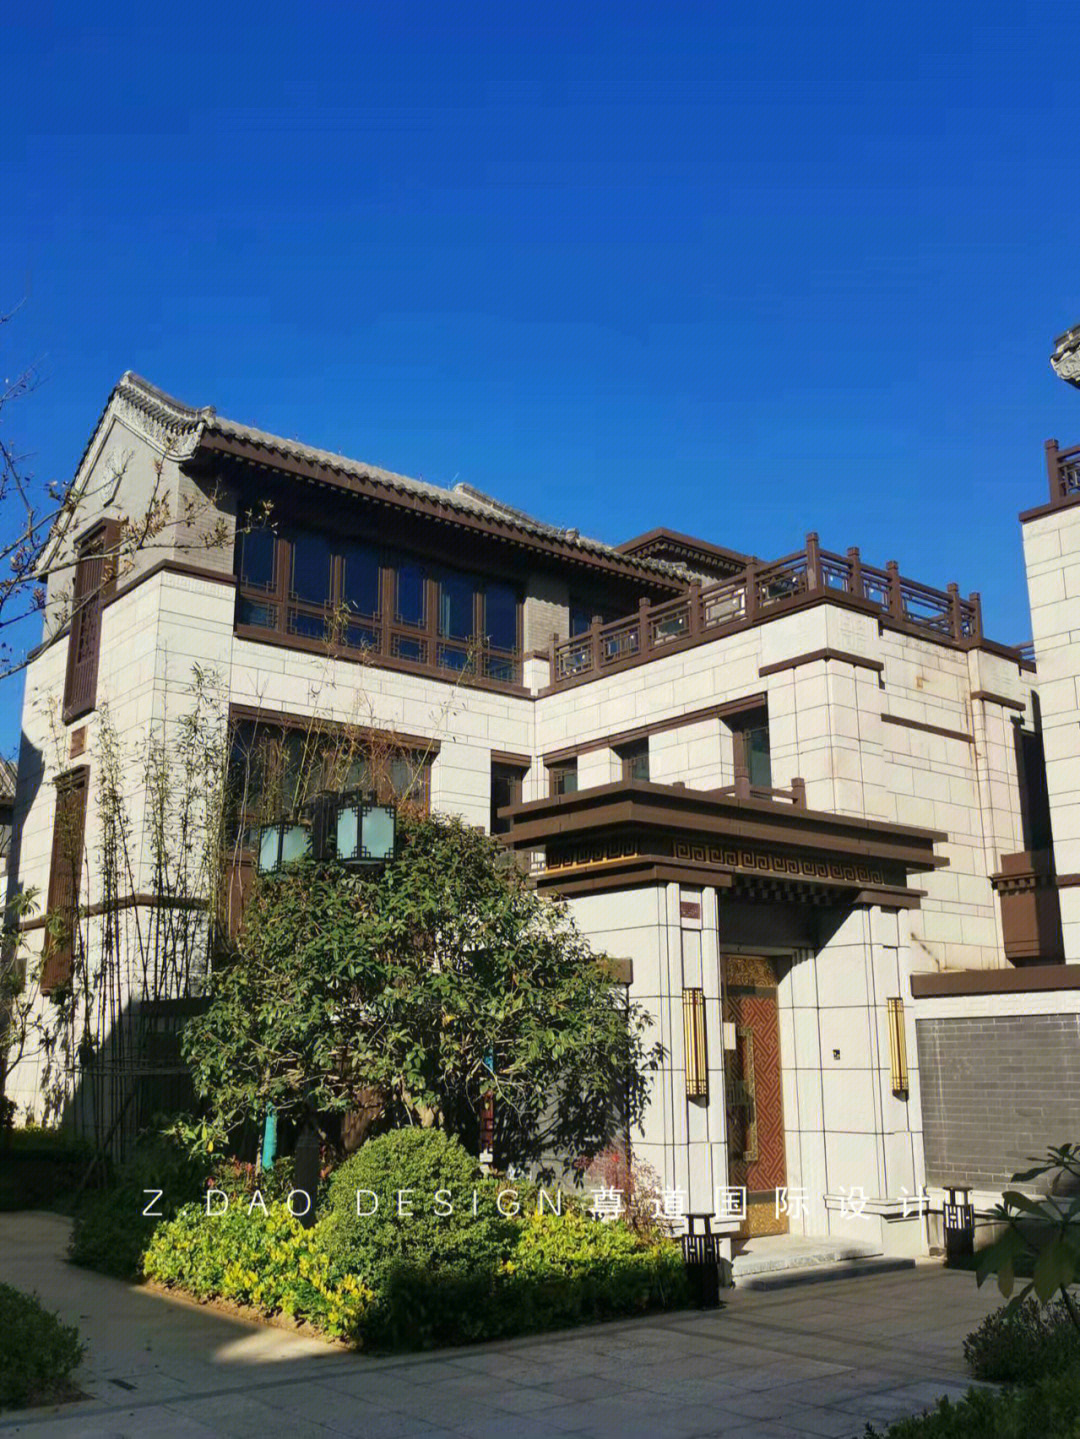 紫蓬山宅院图片